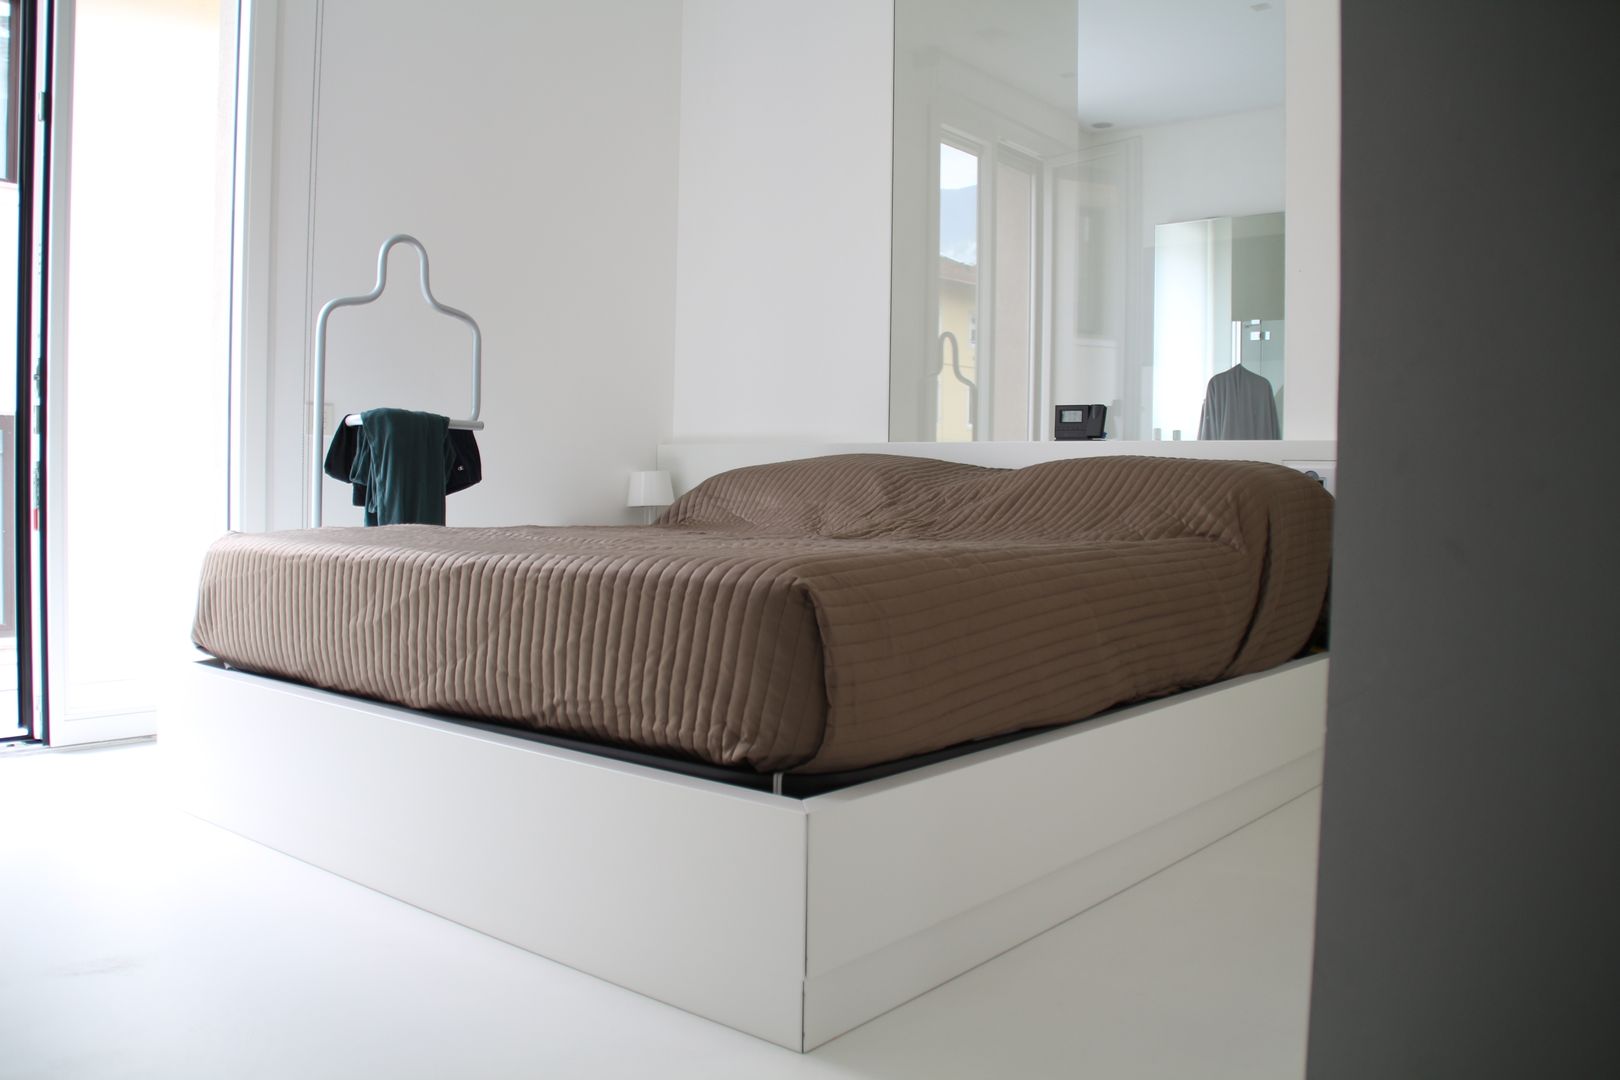 TOTAL WHITE, Serenella Pari design Serenella Pari design Chambre minimaliste